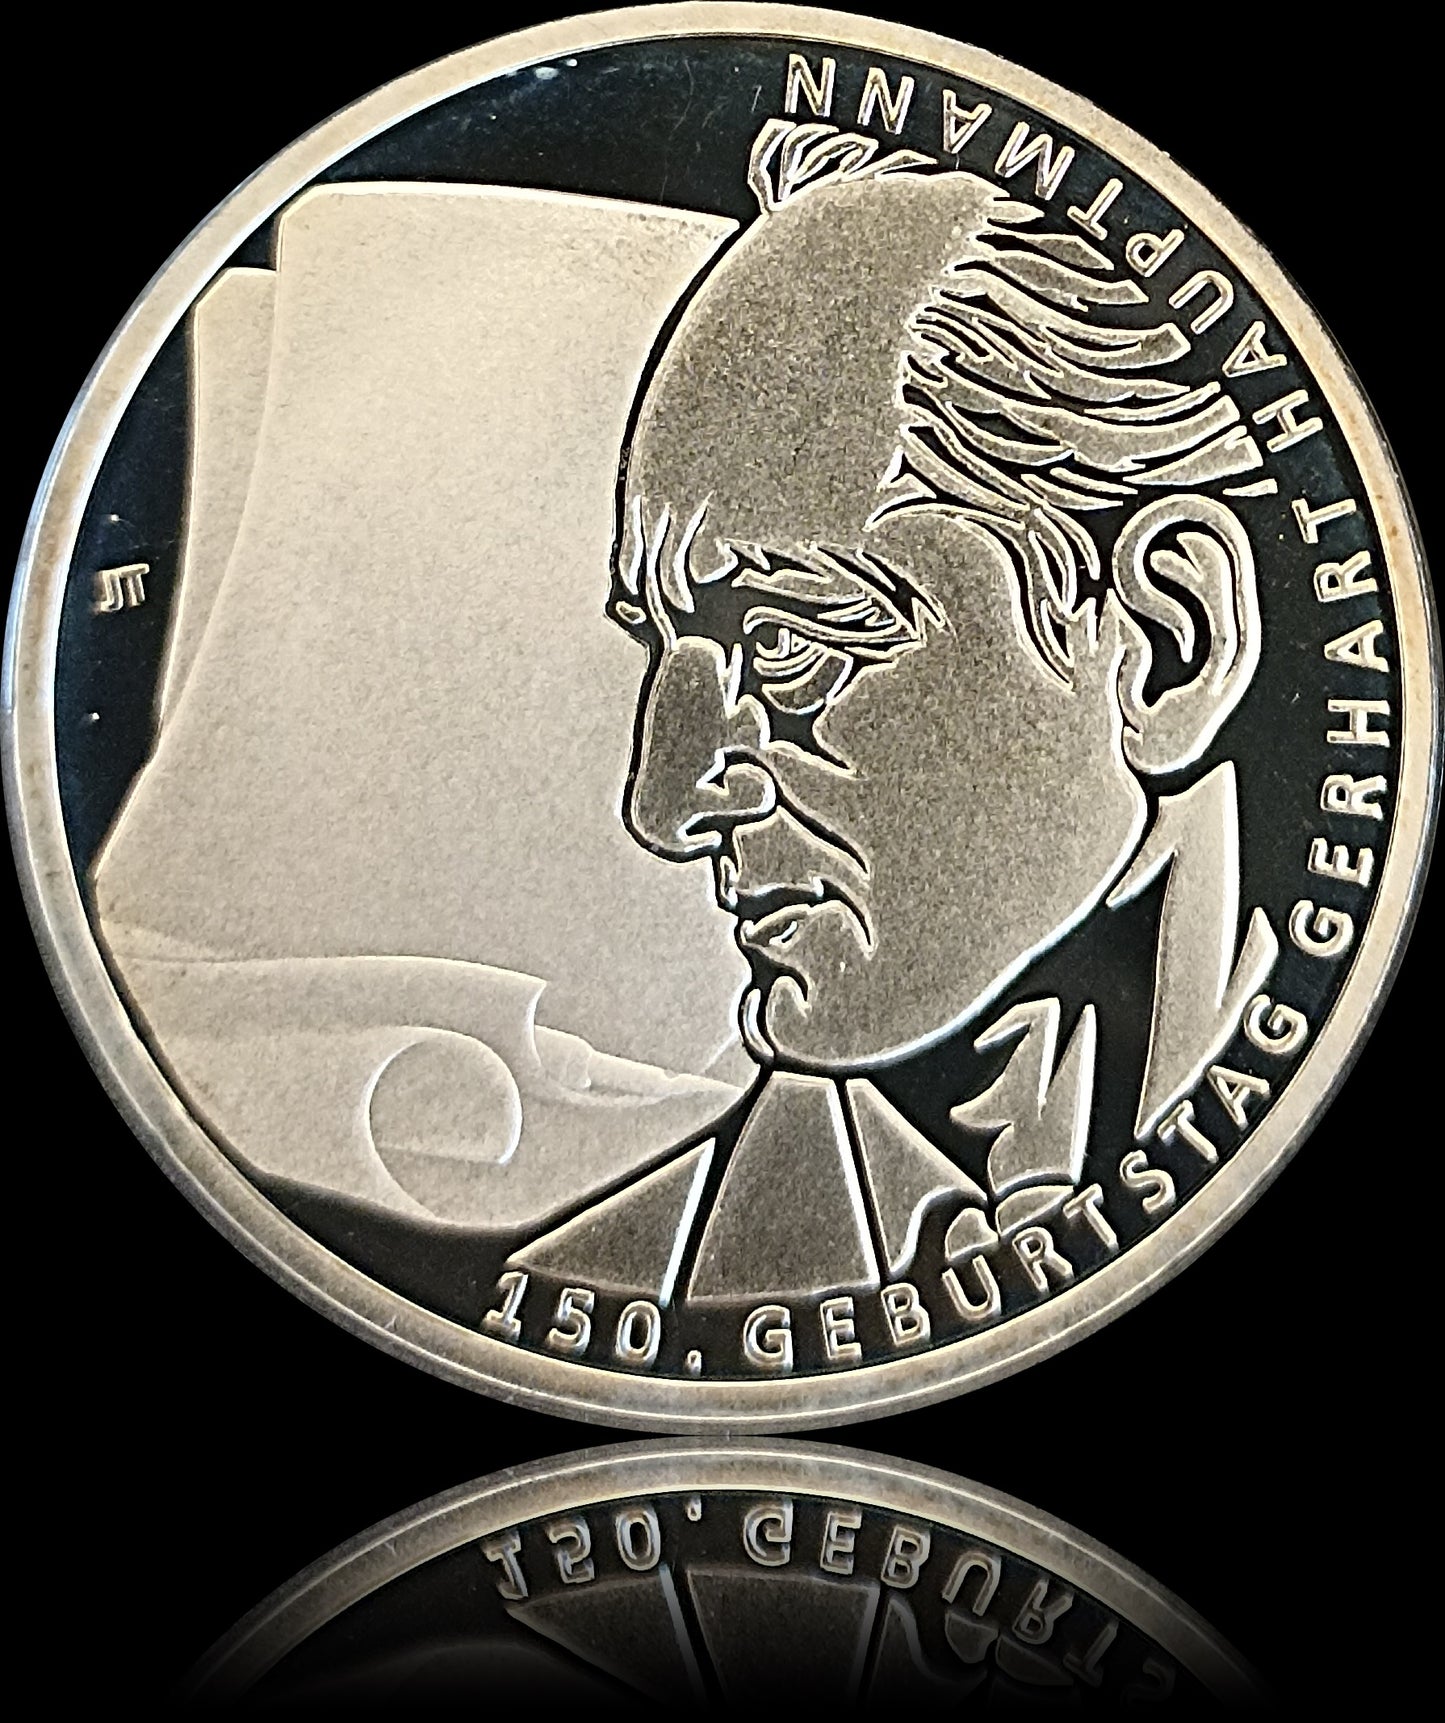 150. GEBURTSTAG GERHART HAUPTMANN, Serie 10 € Silber Gedenkmünzen Deutschland, Spiegelglanz, 2012